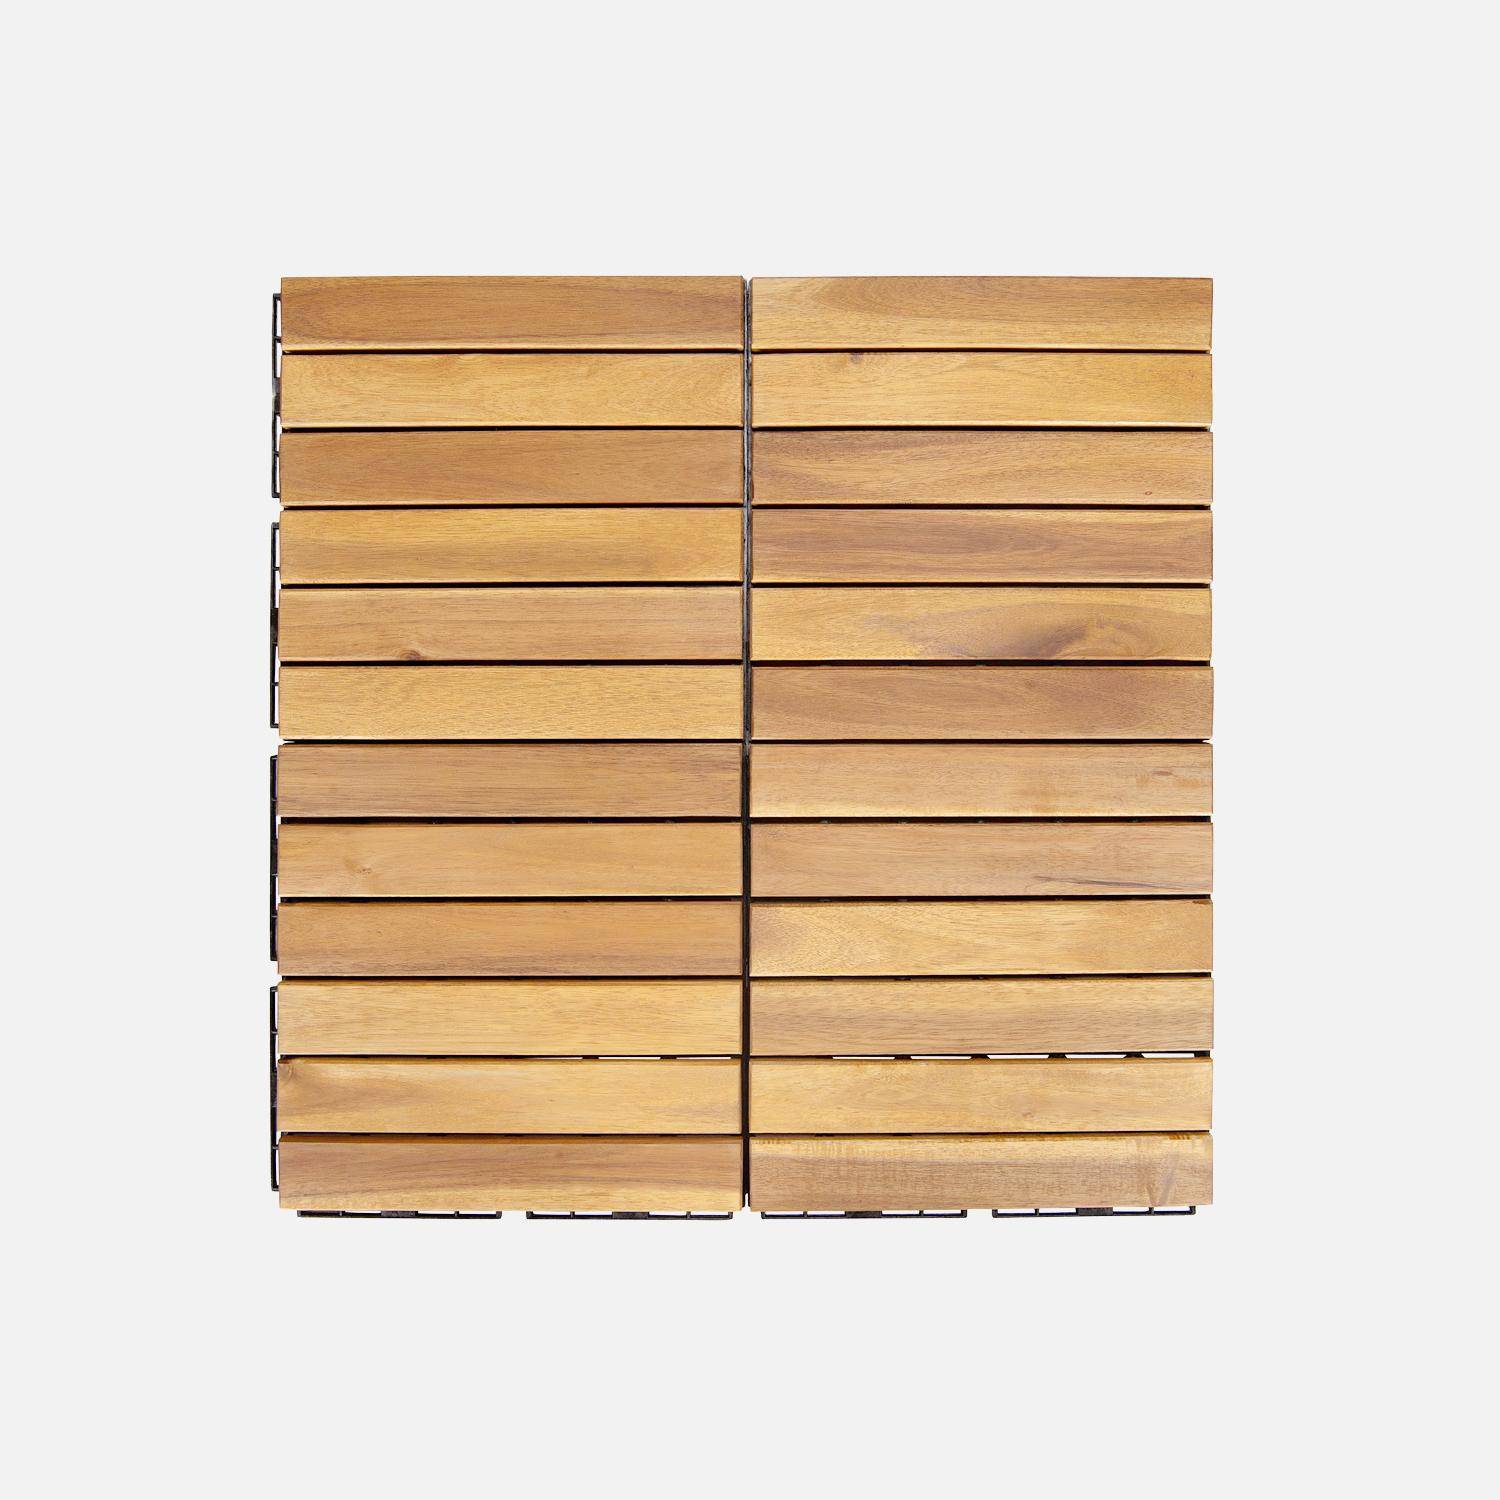 Lote de 36 ladrilhos para decks de madeira de acácia 30x30cm, padrão linear, ripado, de encaixe Photo4